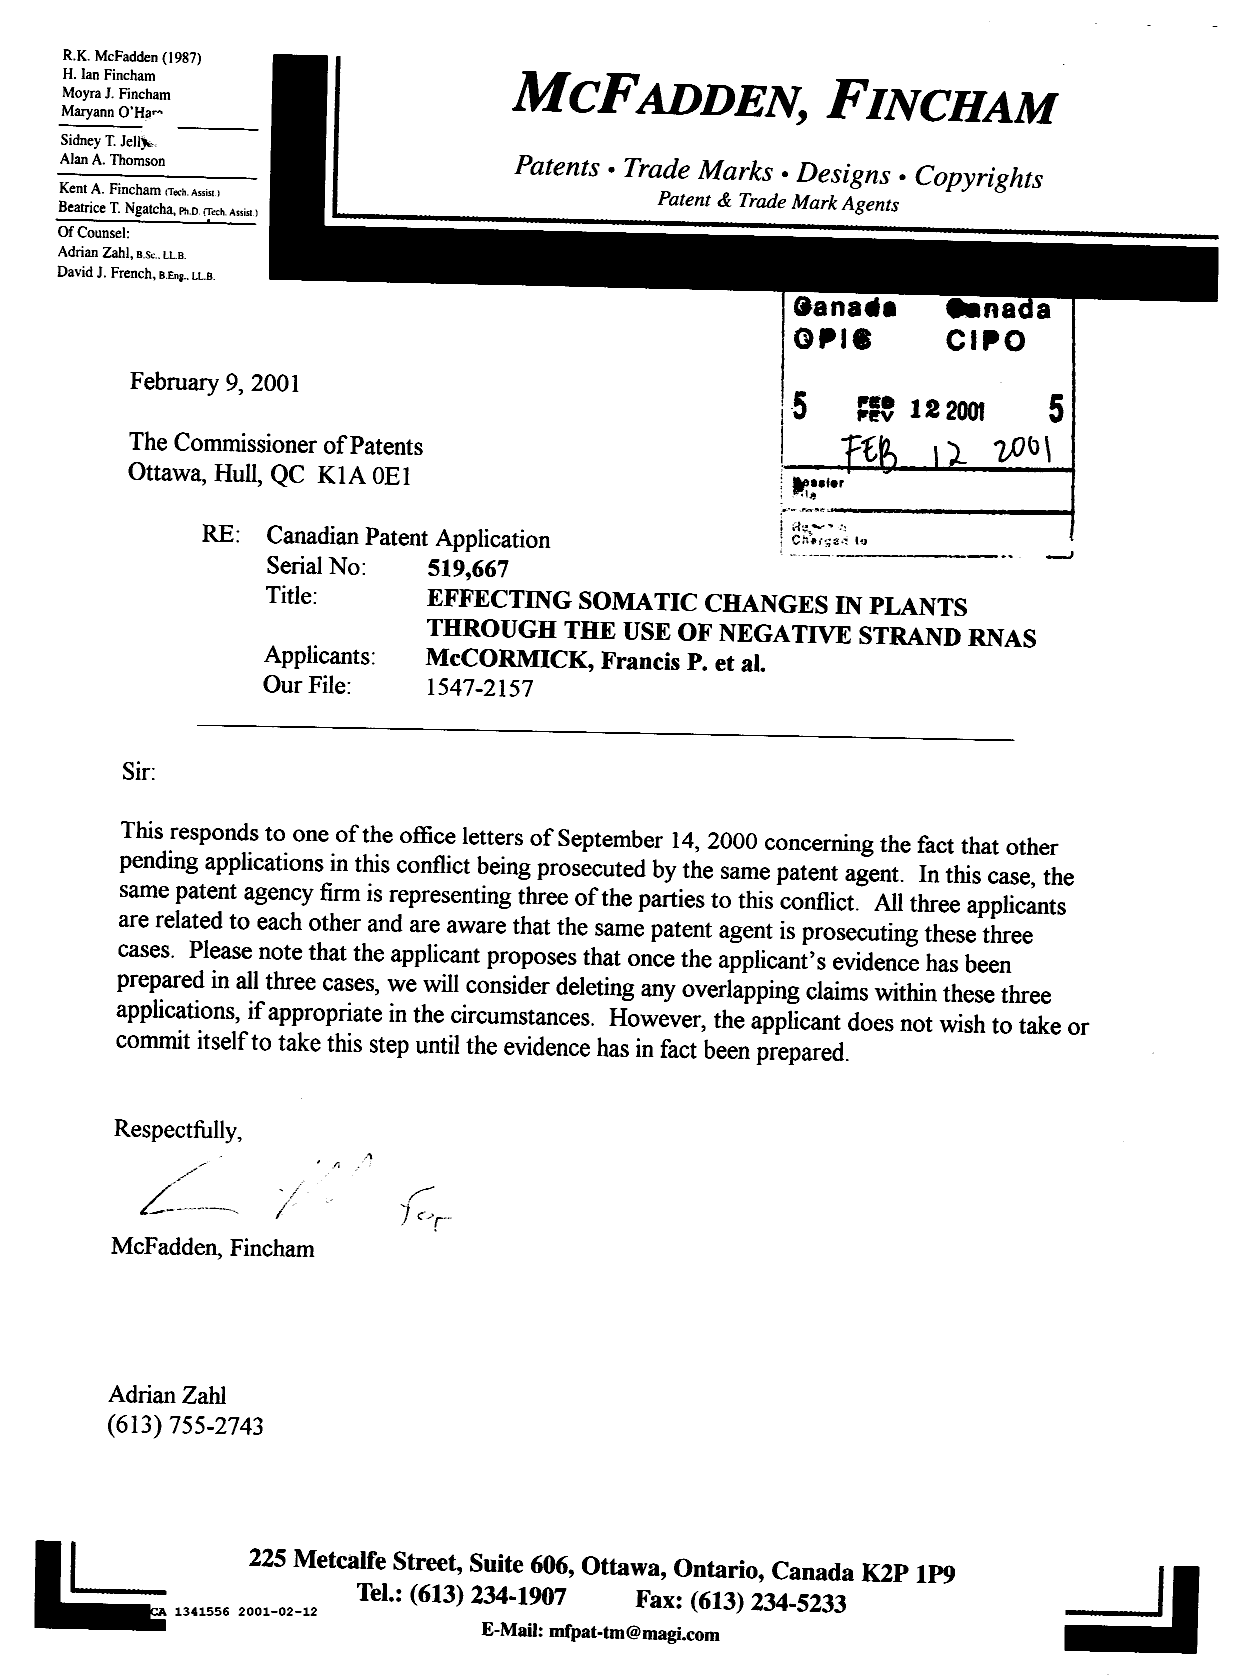 Document de brevet canadien 1341556. Correspondance reliée au PCT 20010212. Image 1 de 1